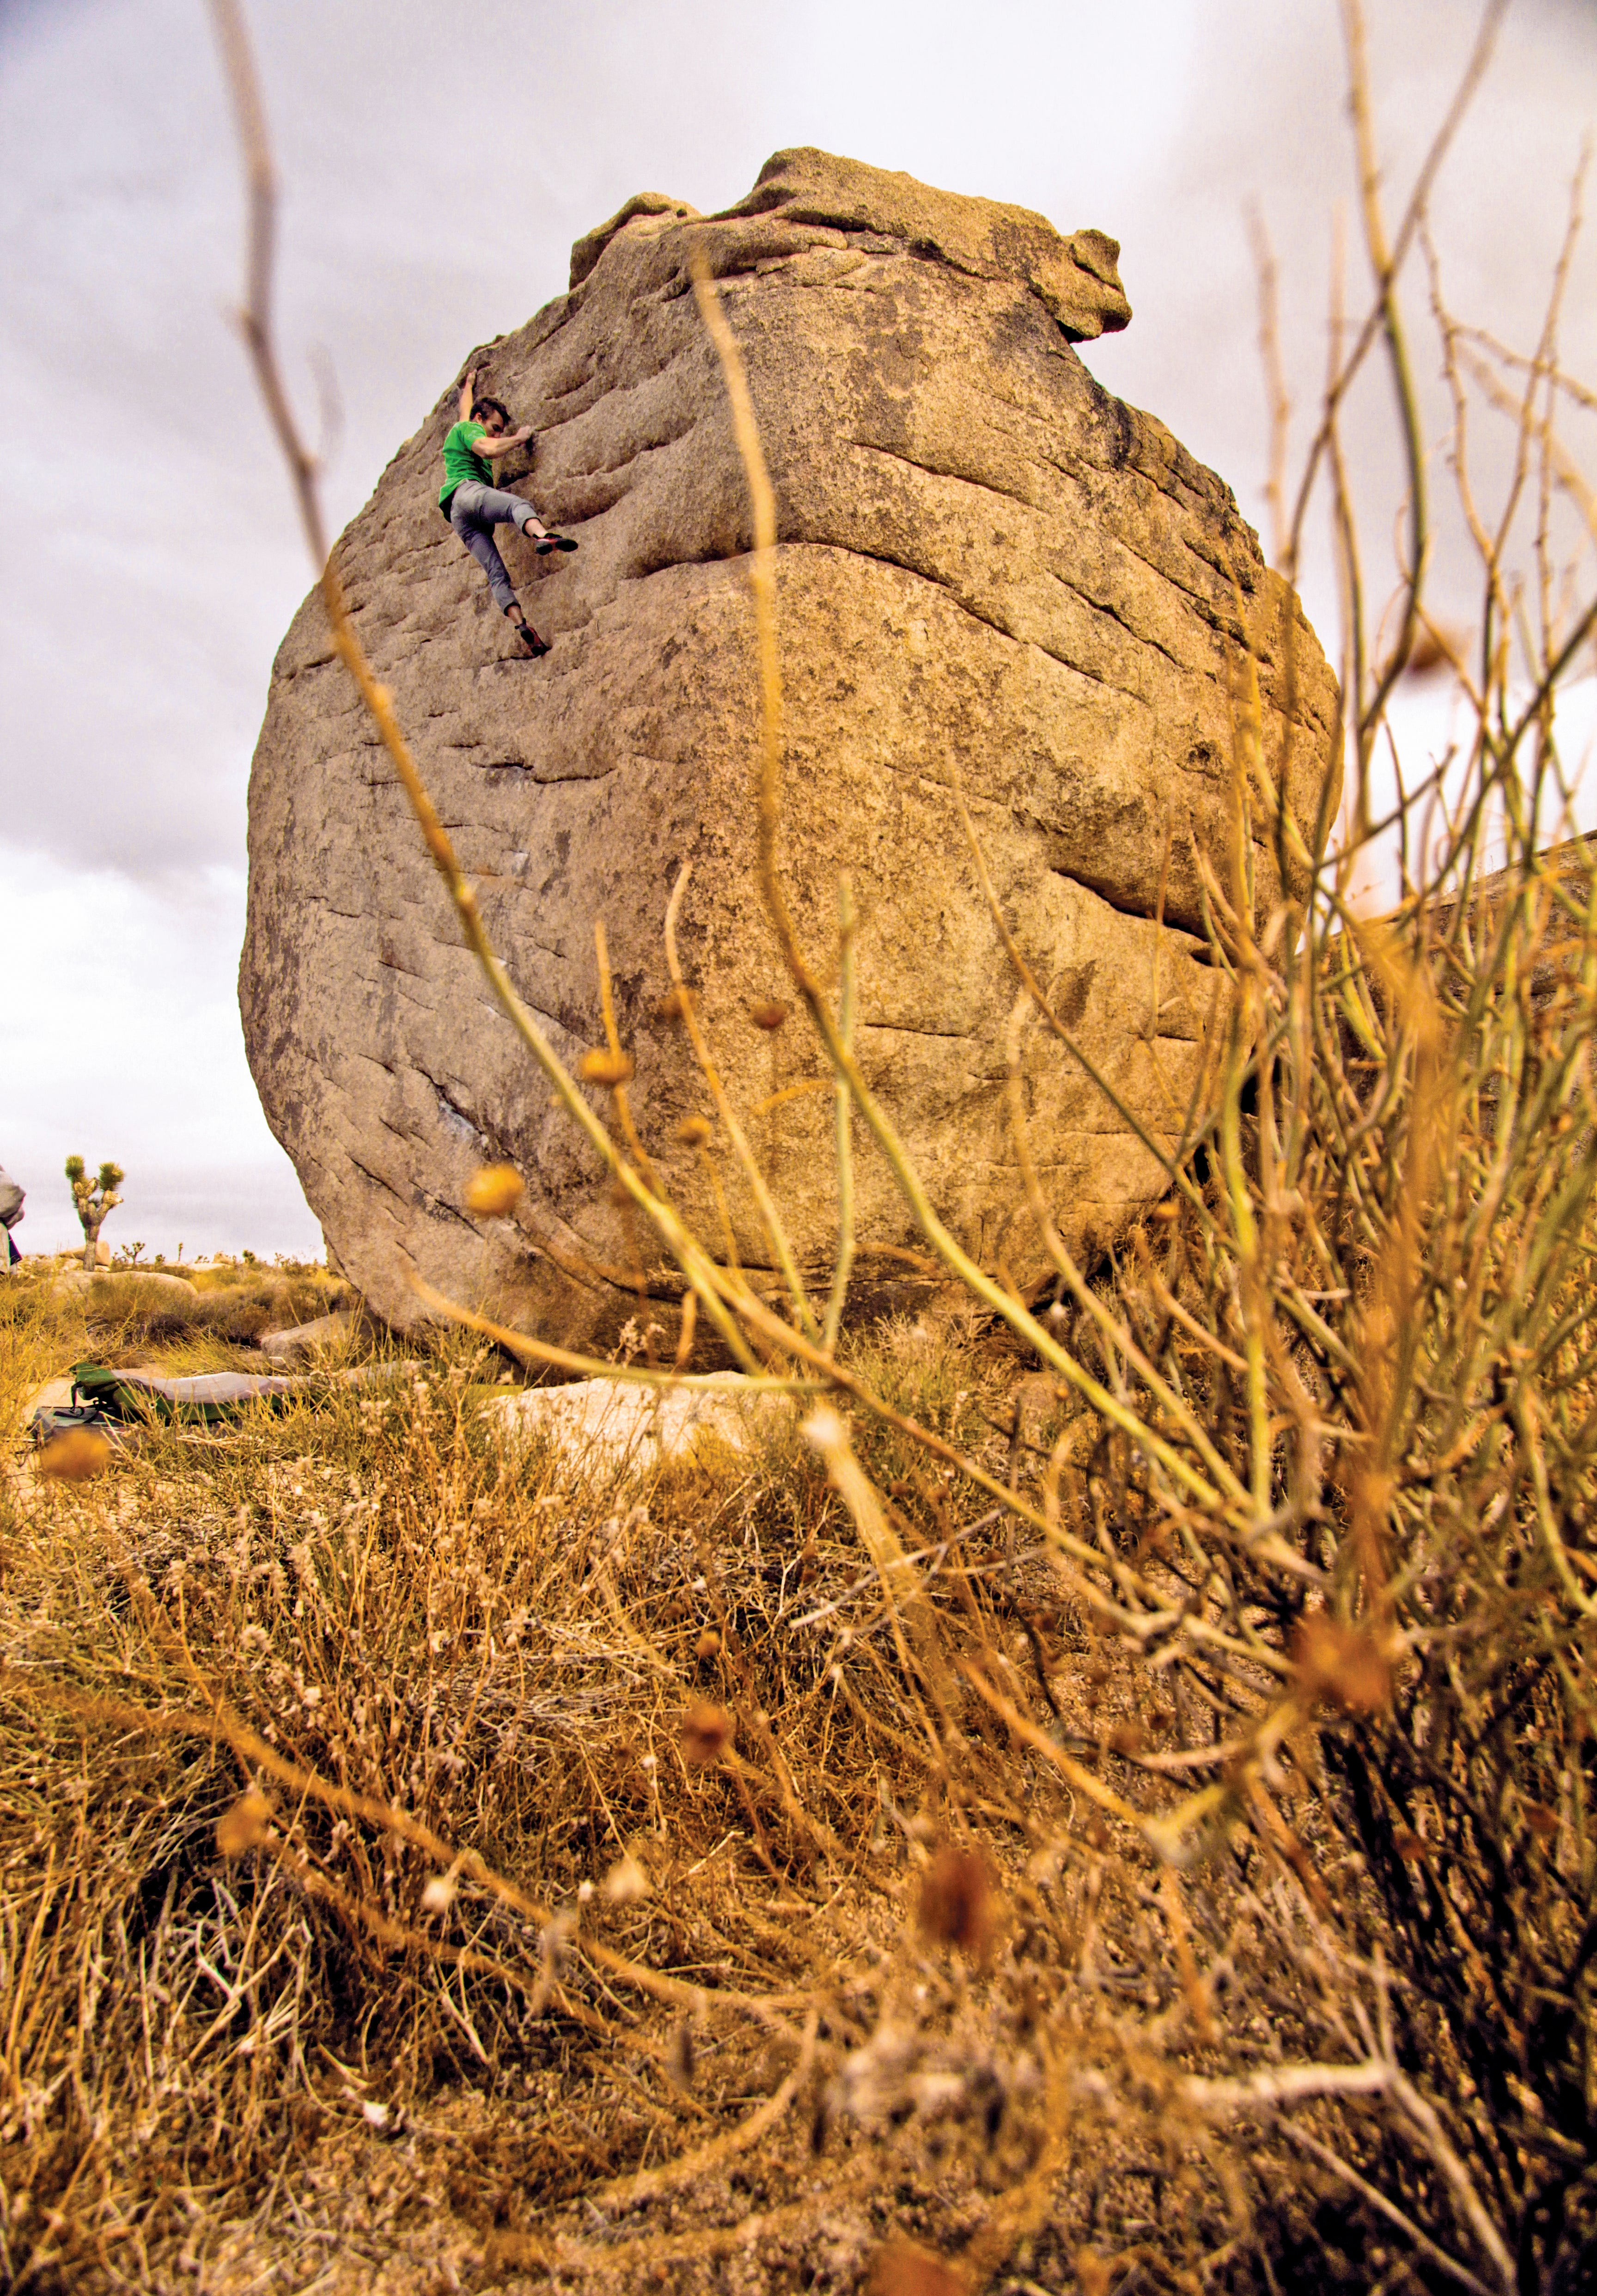 Matus Sobolic Joshua Tree Slashface Bouldering Rock Climbing California